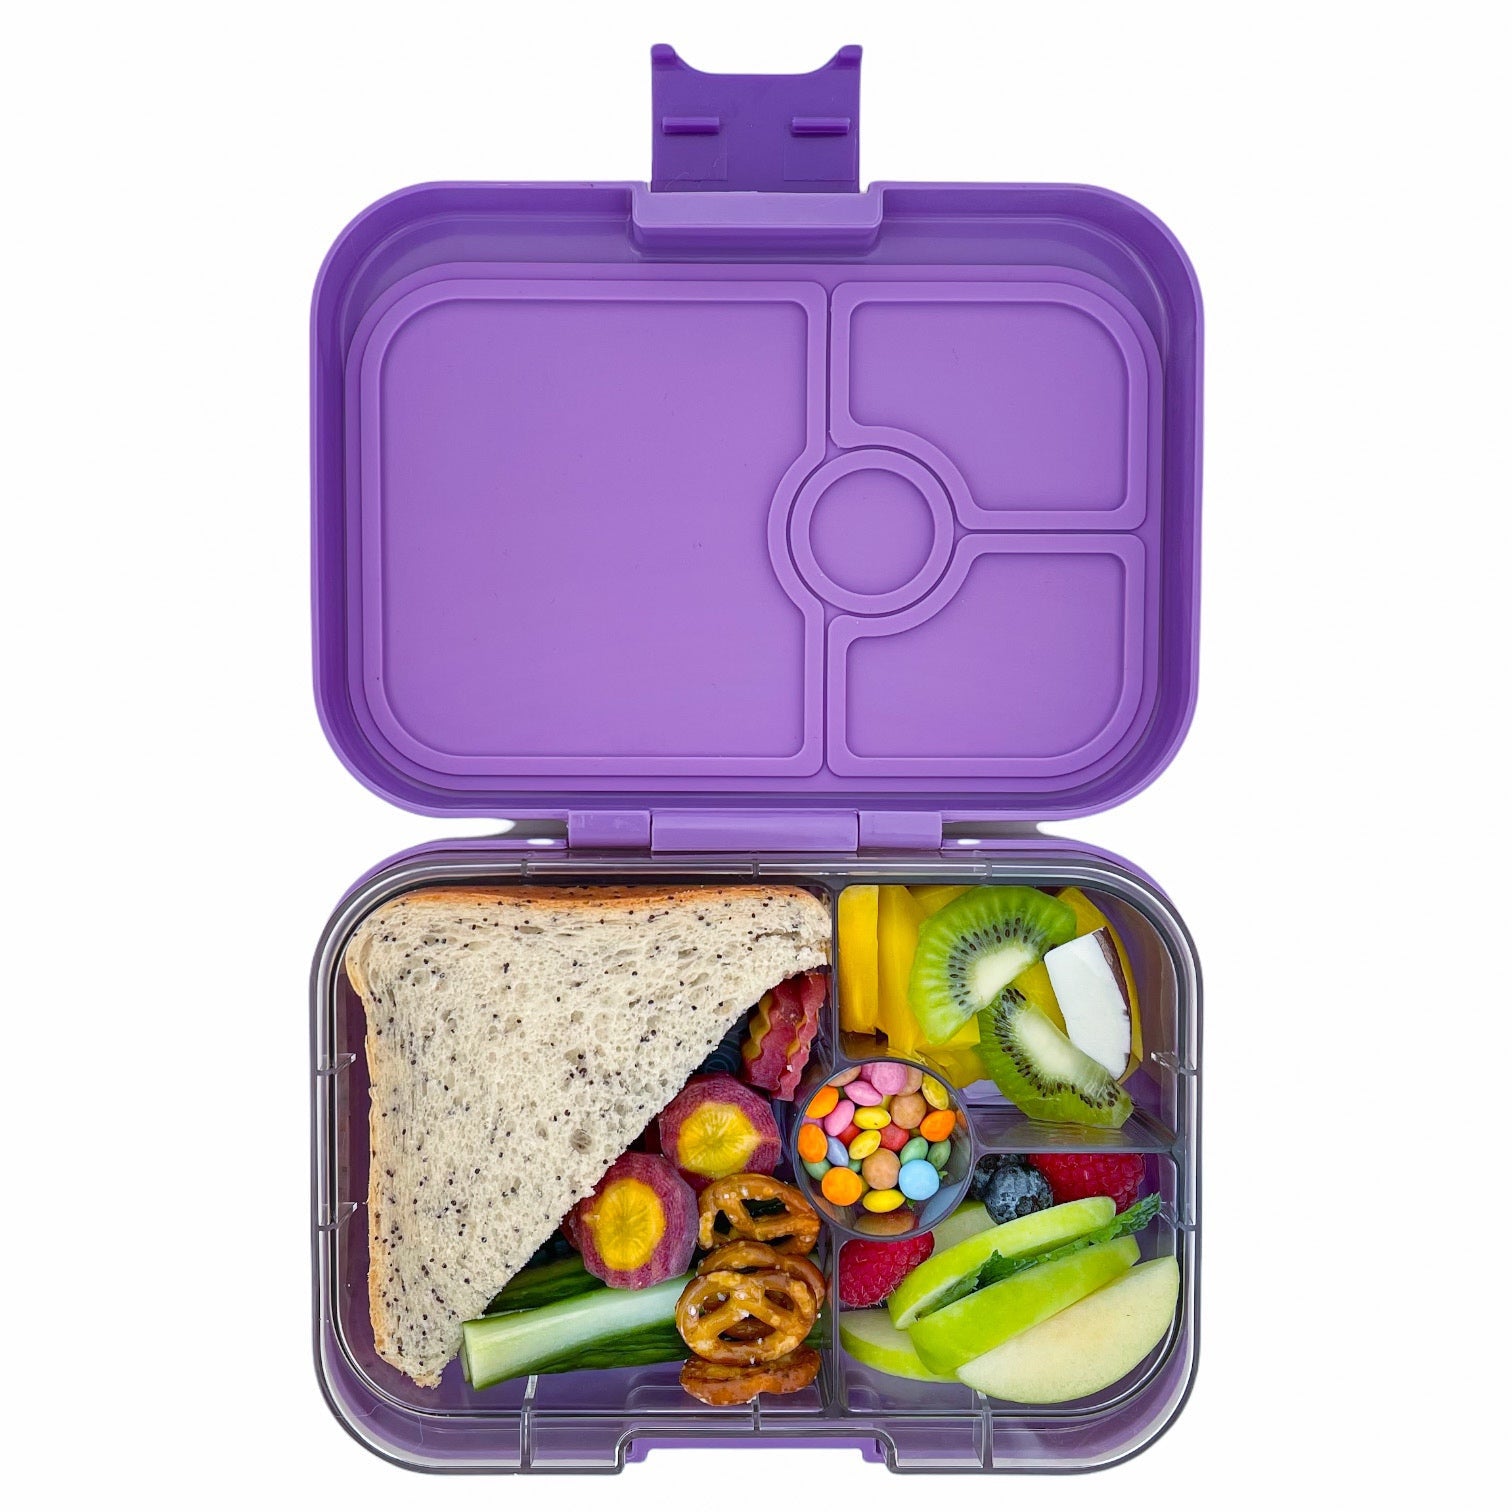 yumbox-panino-4-compartment-lunch-box-dreamy-purple-panda-yumb-dpii202110p- (5)